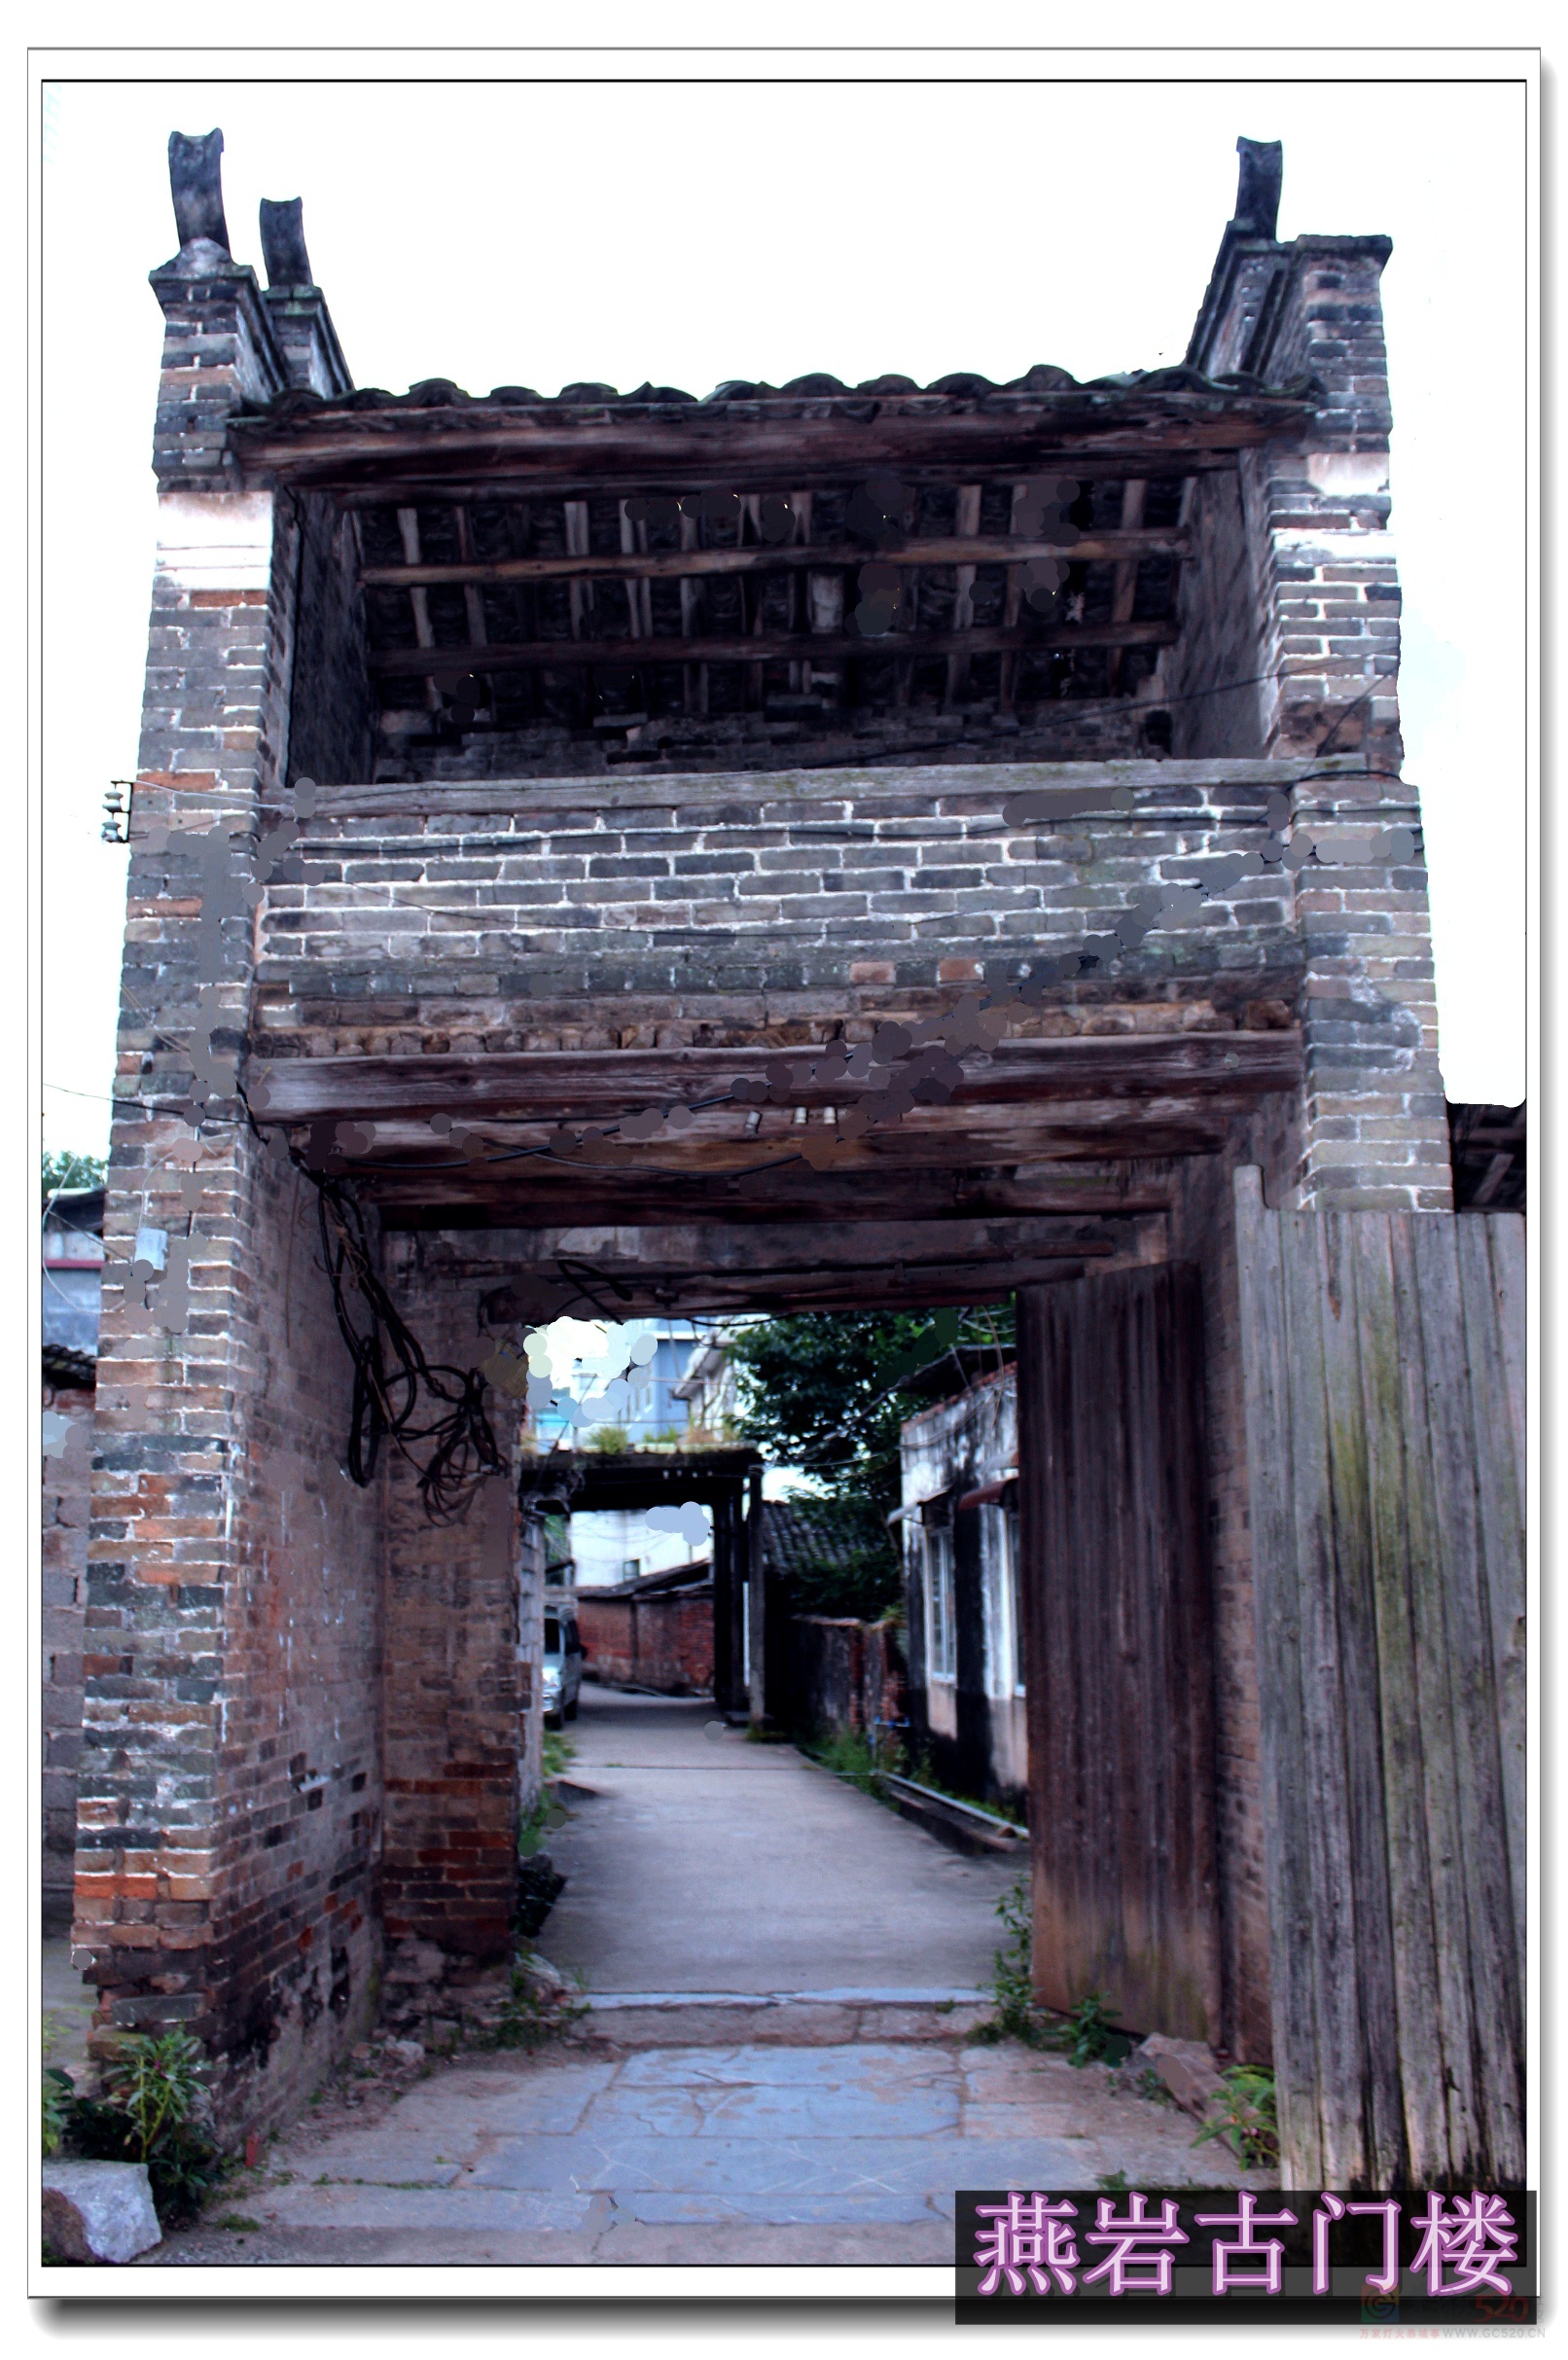 岁月渐渐变老，燕岩河的老浮桥、燕岩村的古建筑你可曾见过275 / 作者:陈爱国 / 帖子ID:291532